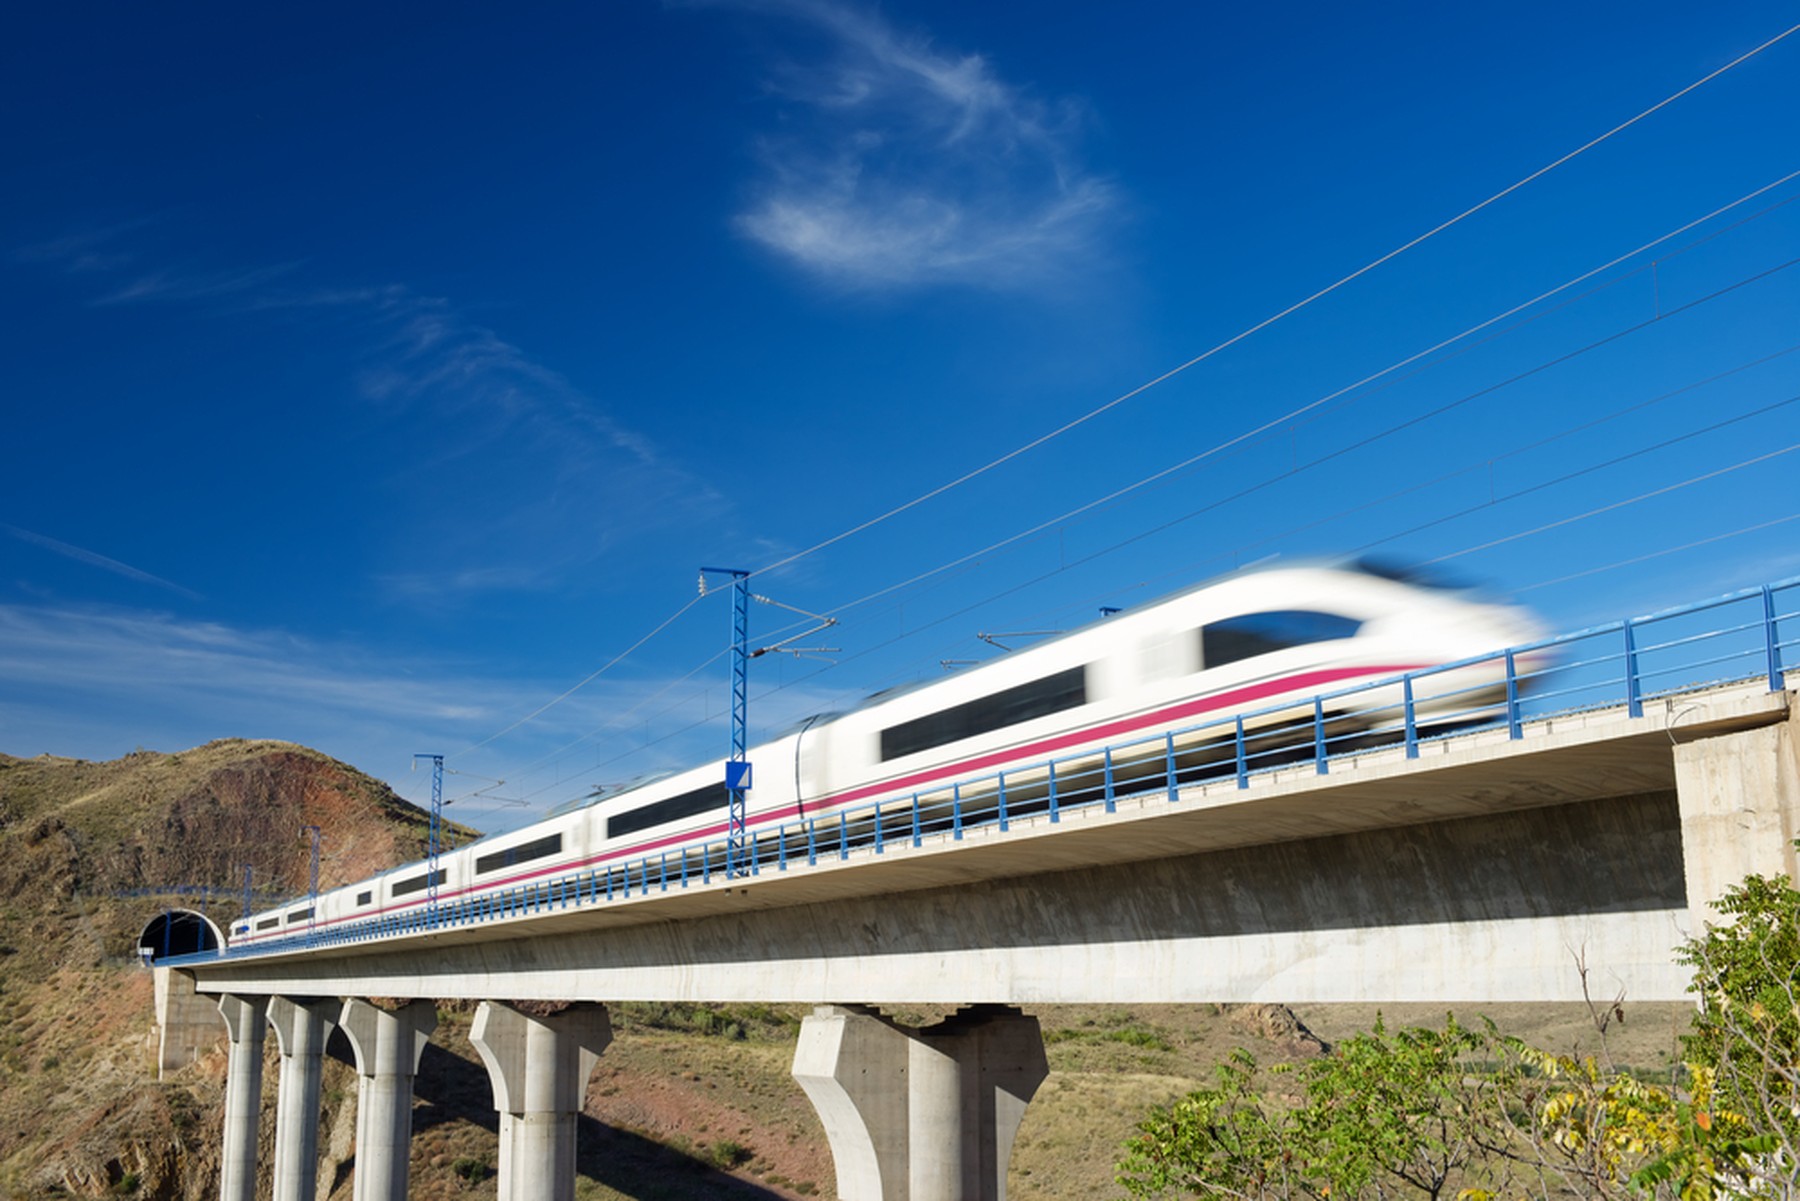 Tren AVE en movimiento saliendo de un túnel con un cielo azul espléndido